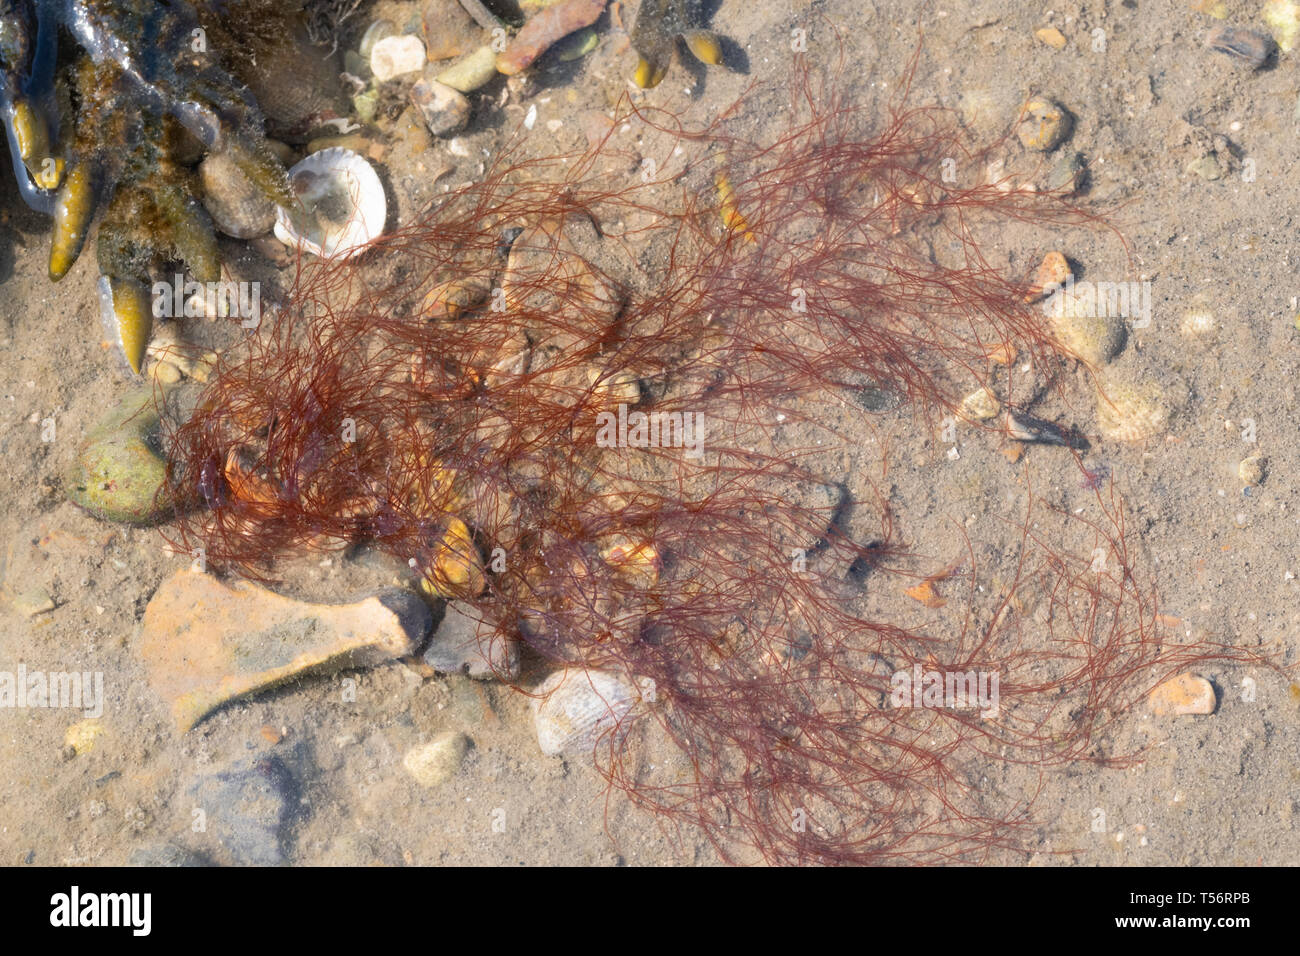 Mermaid i capelli di alghe in riva al mare, Regno Unito Foto Stock